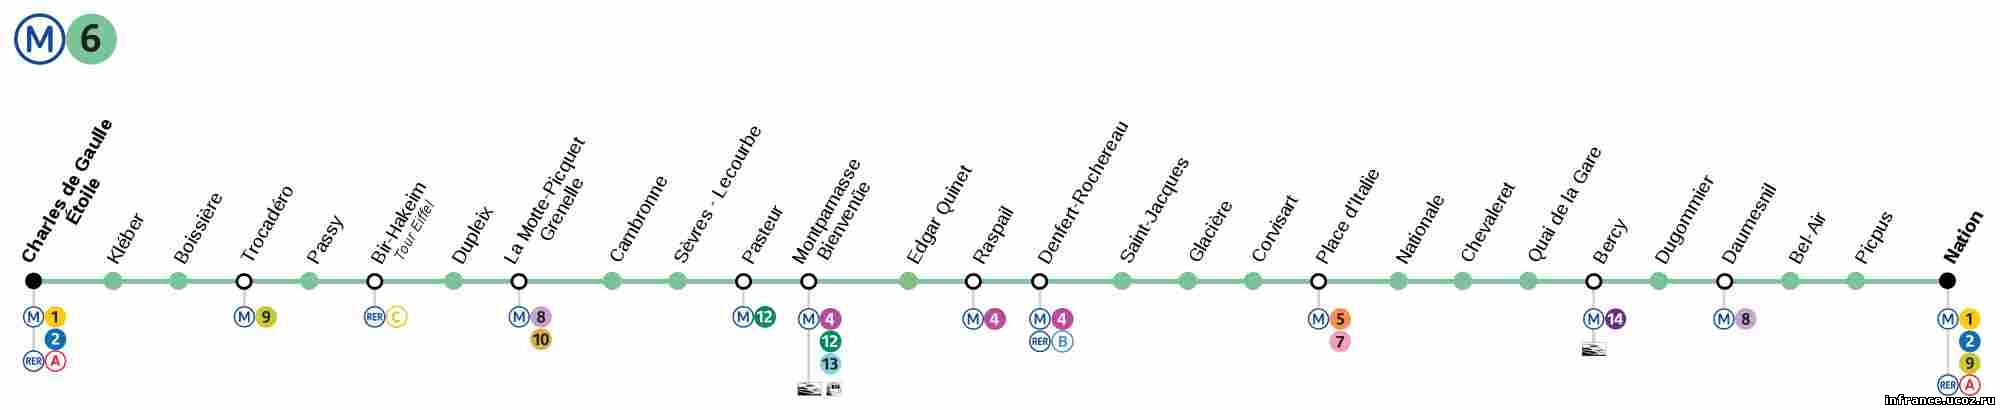 парижский метрополитен линия 6